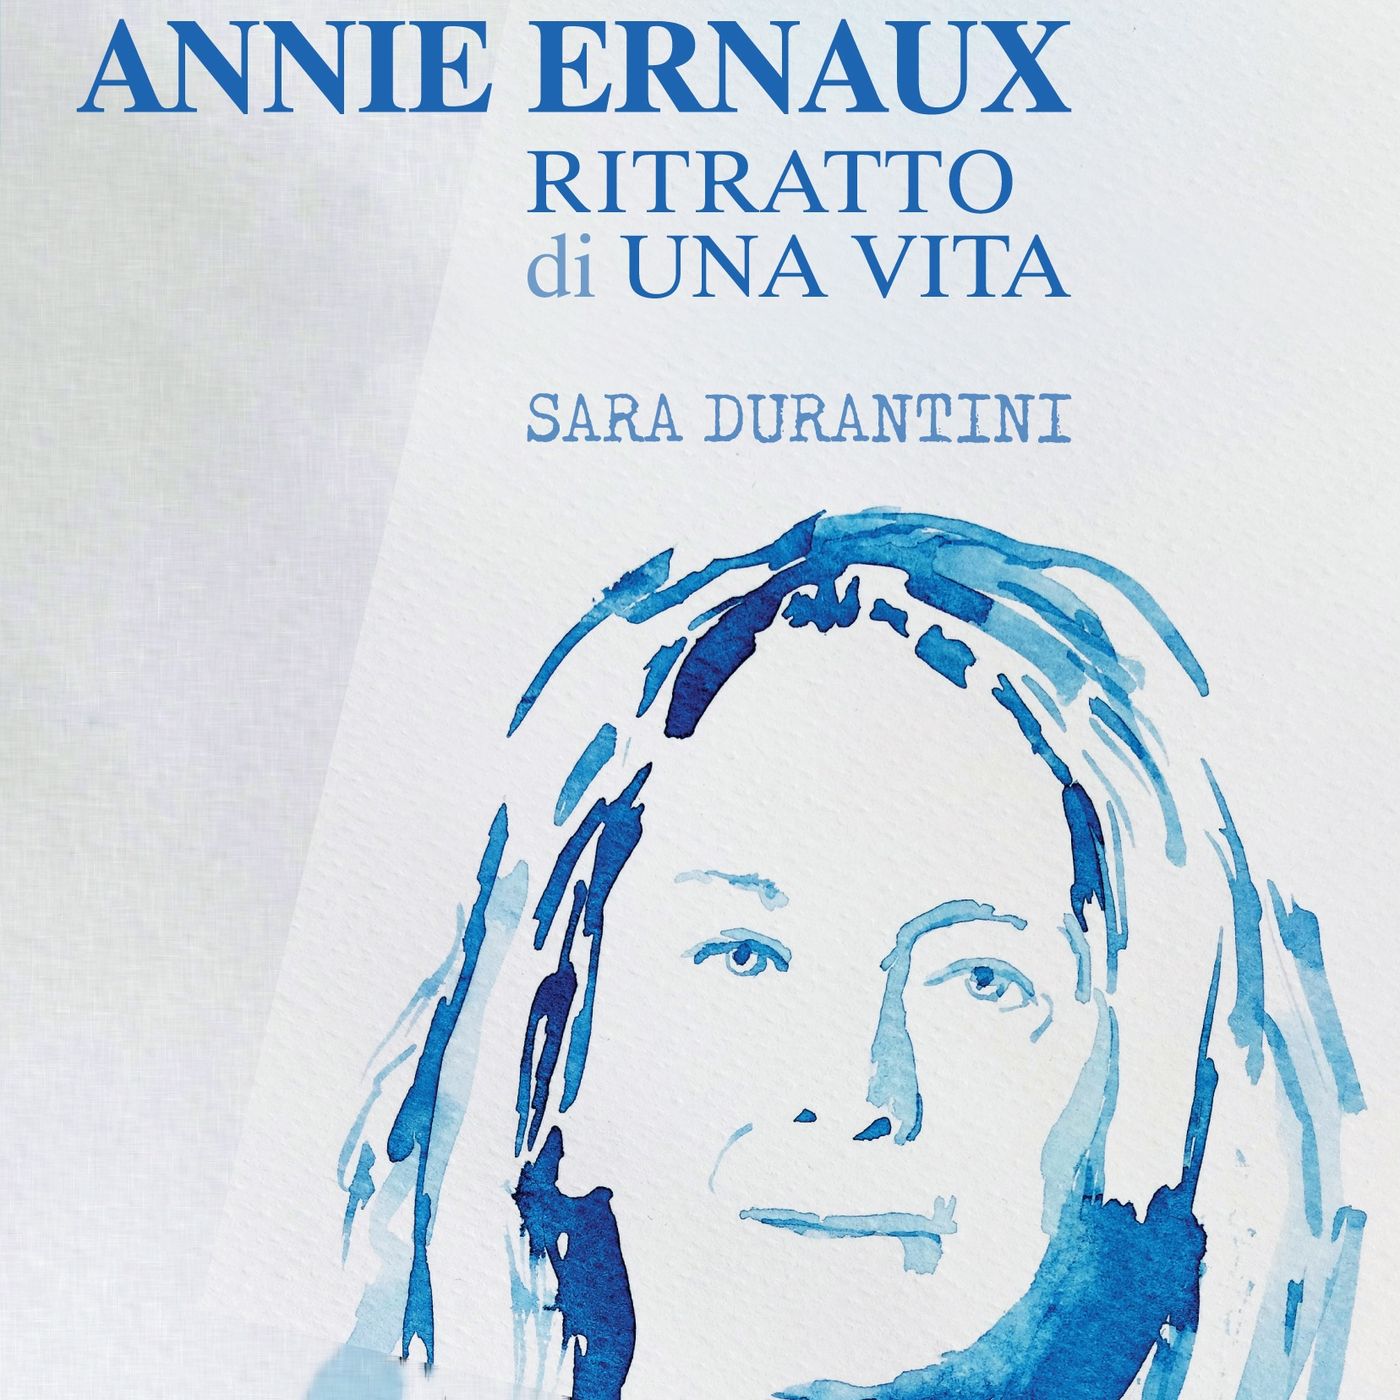 Sara Durantini "Annie Ernaux. Ritratto di una vita"